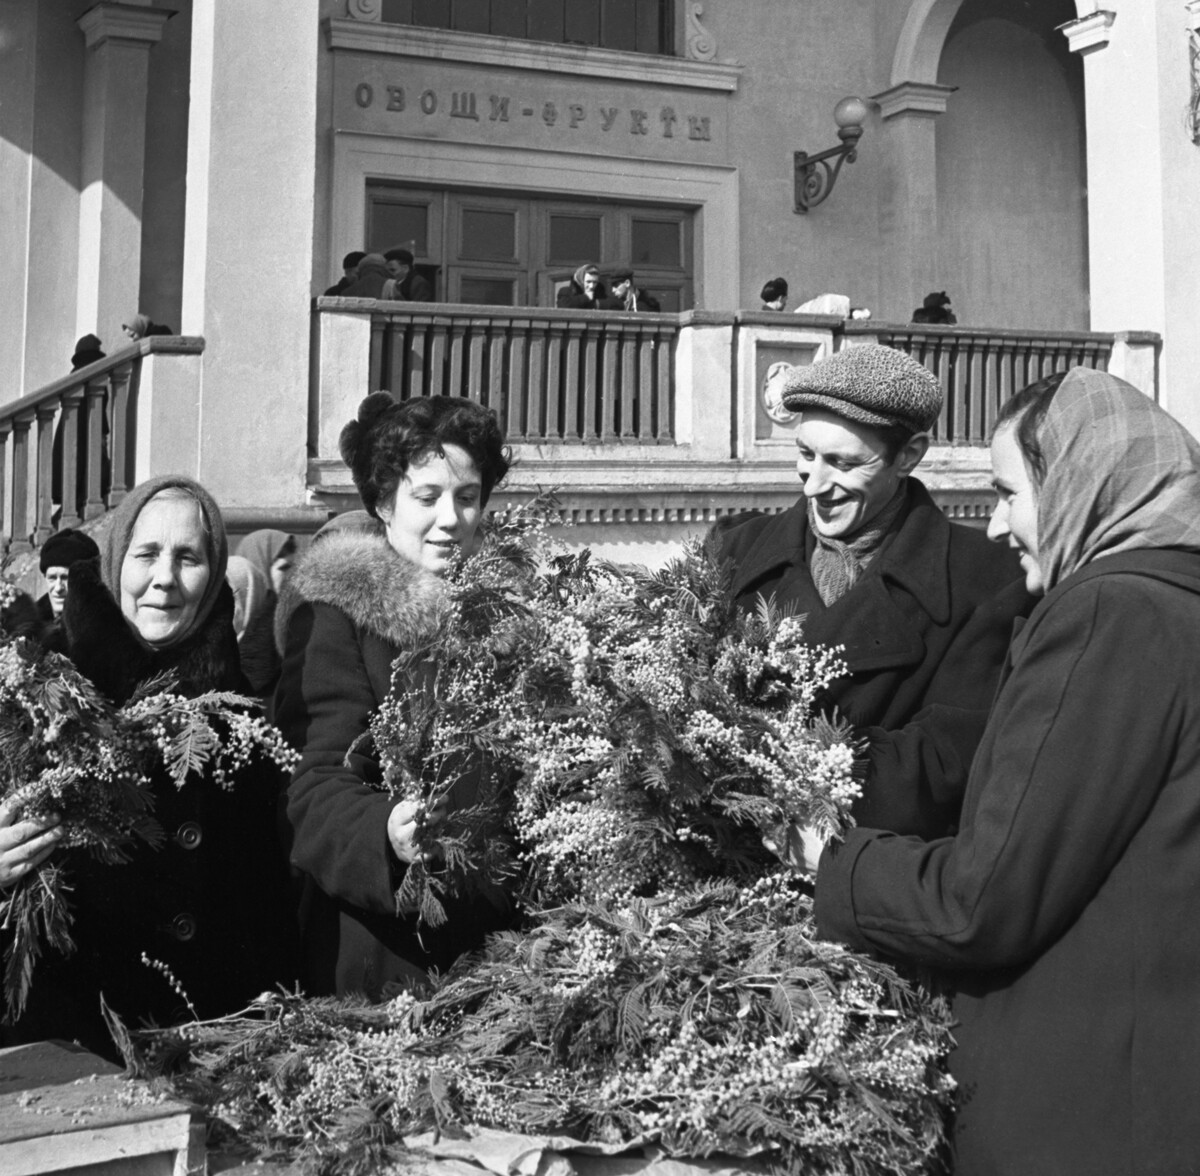 Verkauf von Mimosen auf dem Zentralmarkt am Zwetnoj-Boulevard in Moskau am Vorabend des Internationalen Frauentags, 8. März 1956.